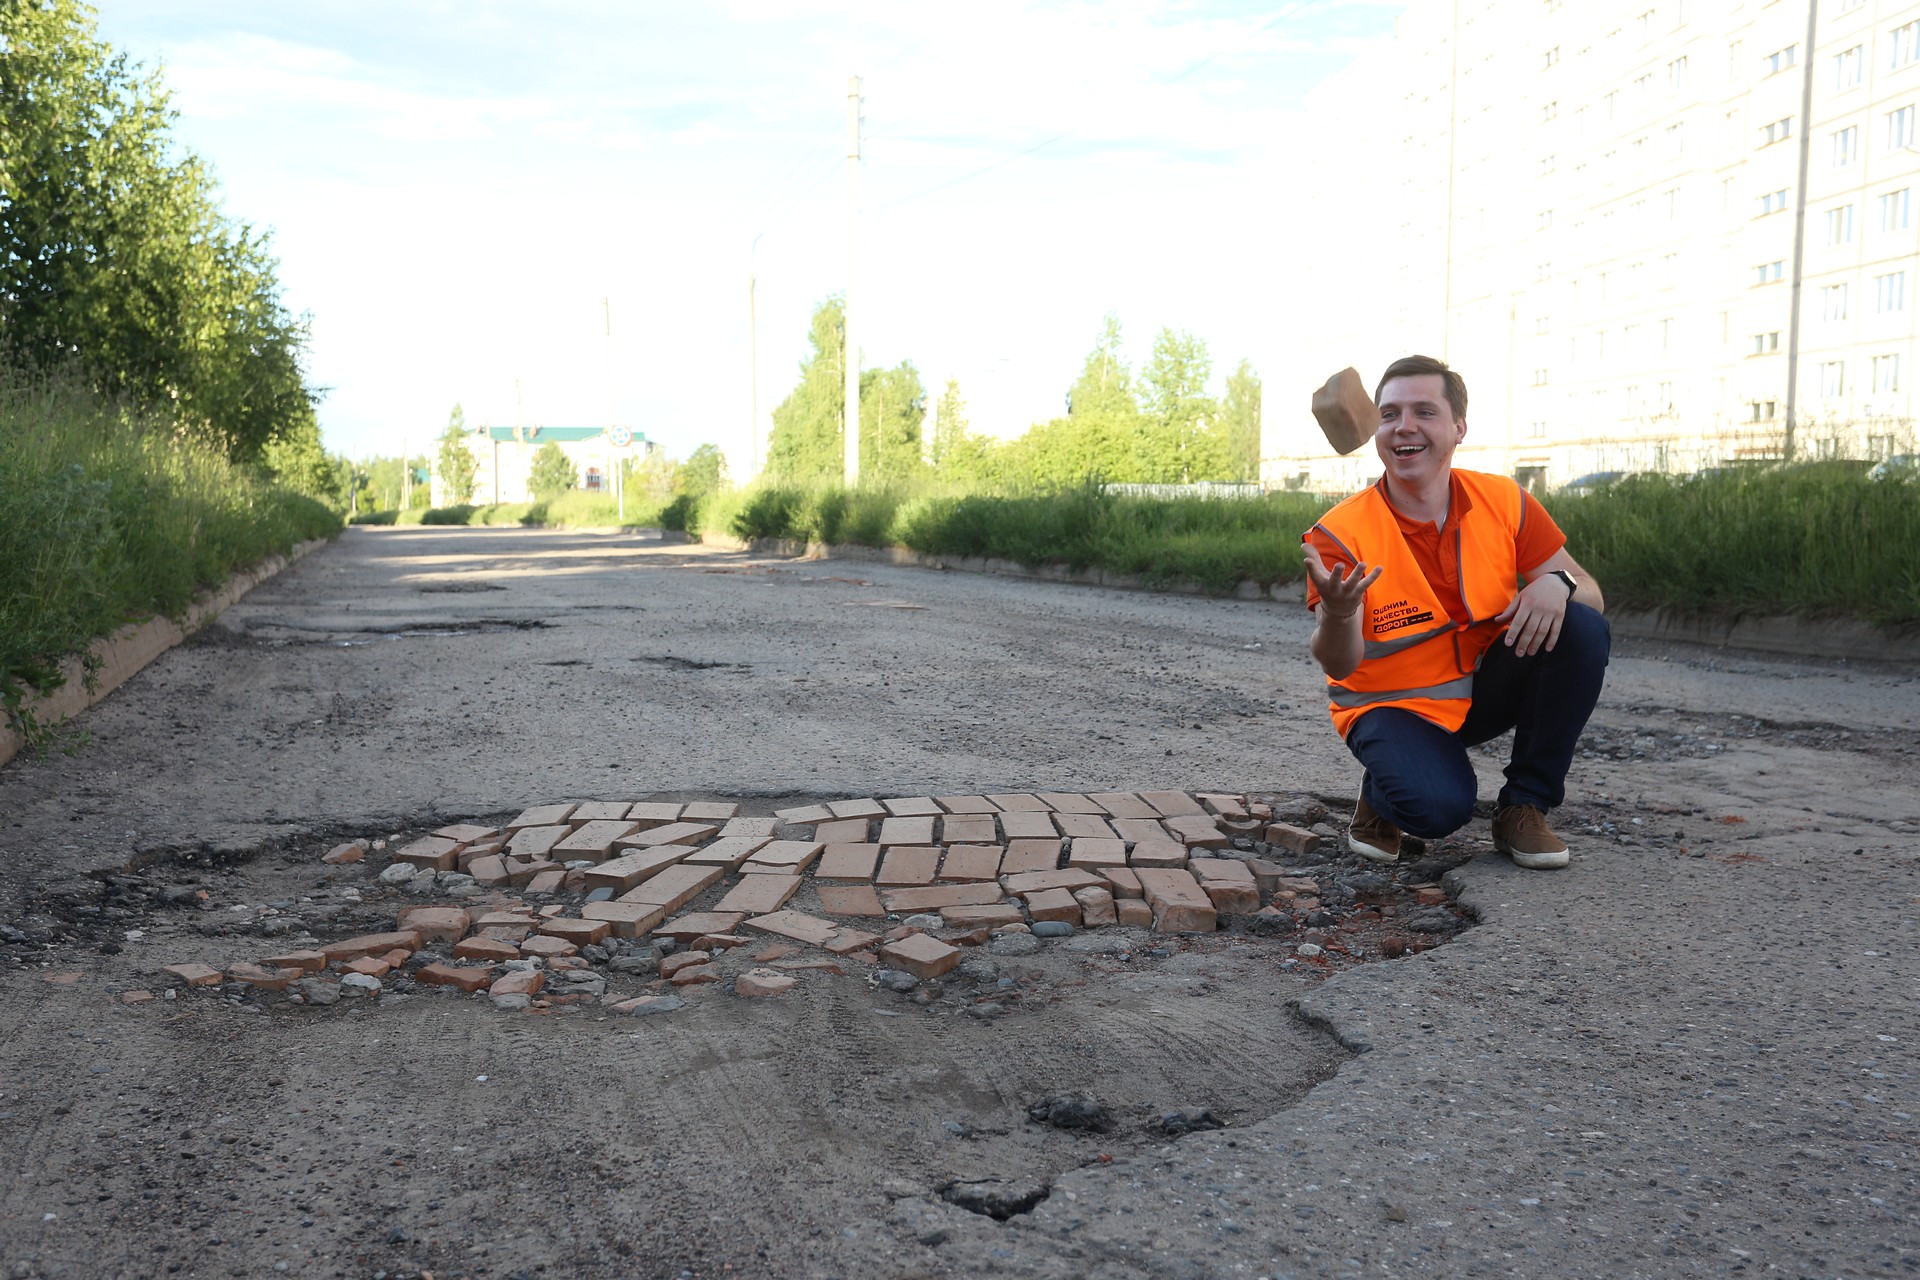 Снимки неказисто отремонтированных костромских дорог обменяют на призы